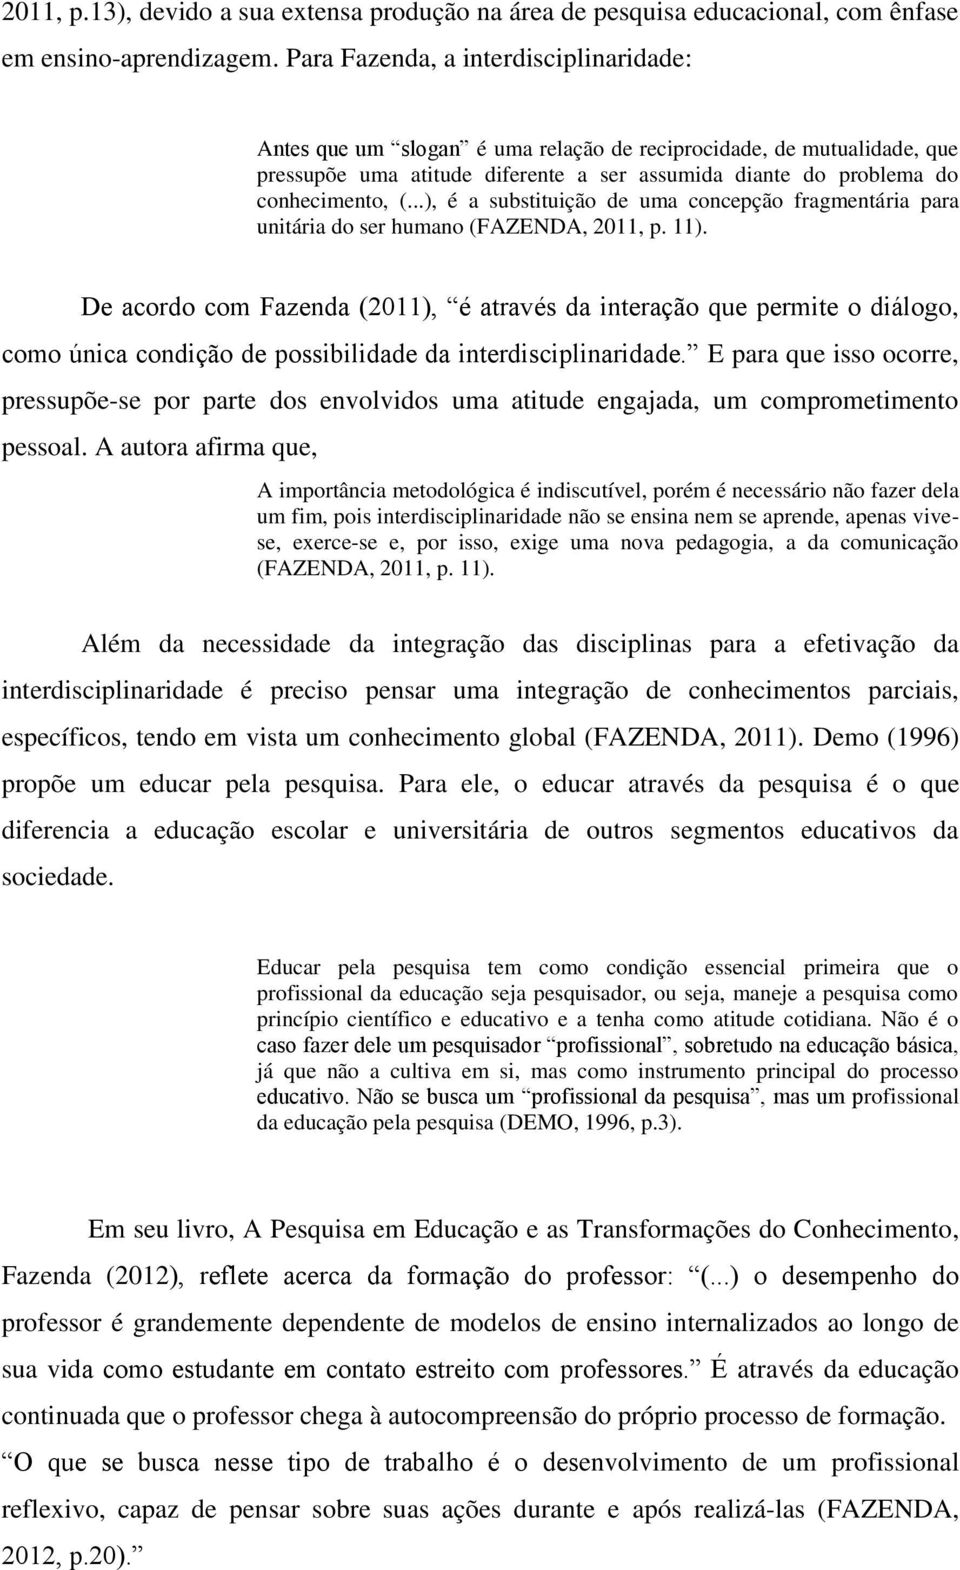 ..), é a substituição de uma concepção fragmentária para unitária do ser humano (FAZENDA, 2011, p. 11).